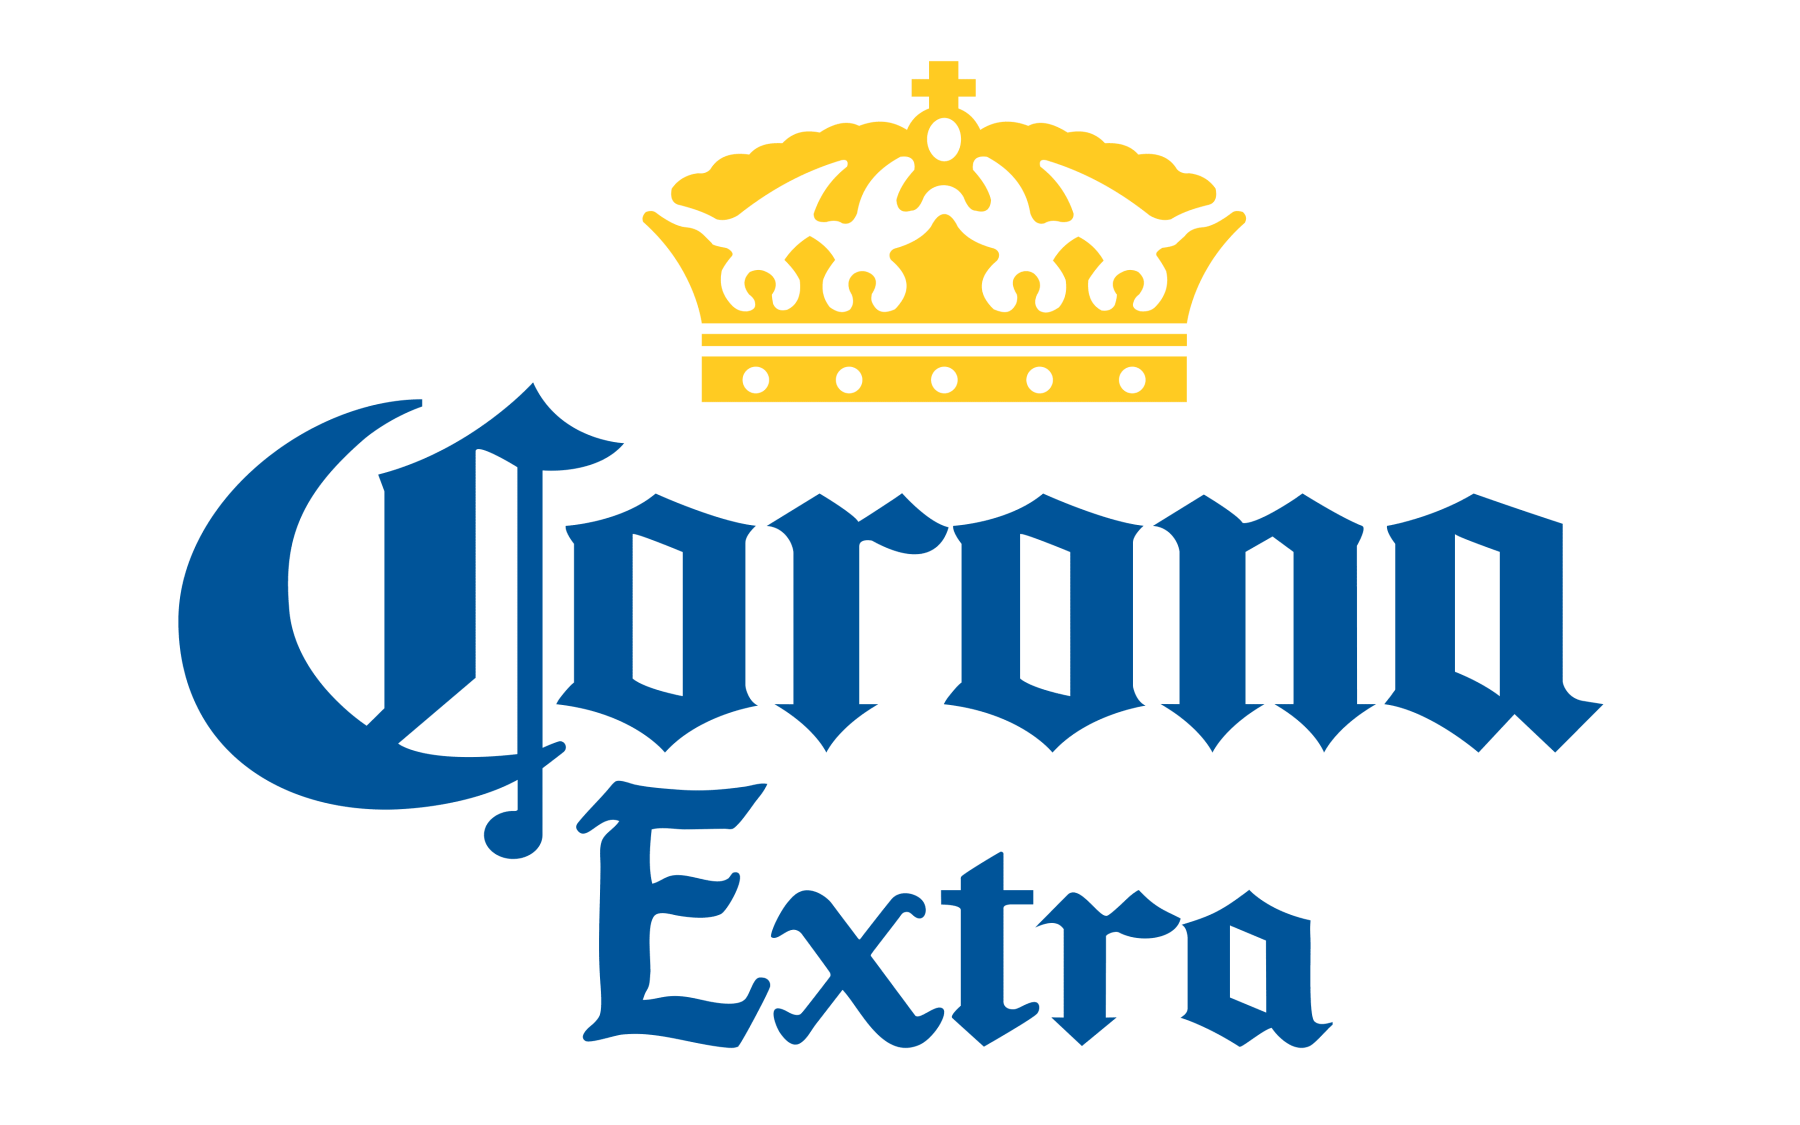 Corona-Extra-logo